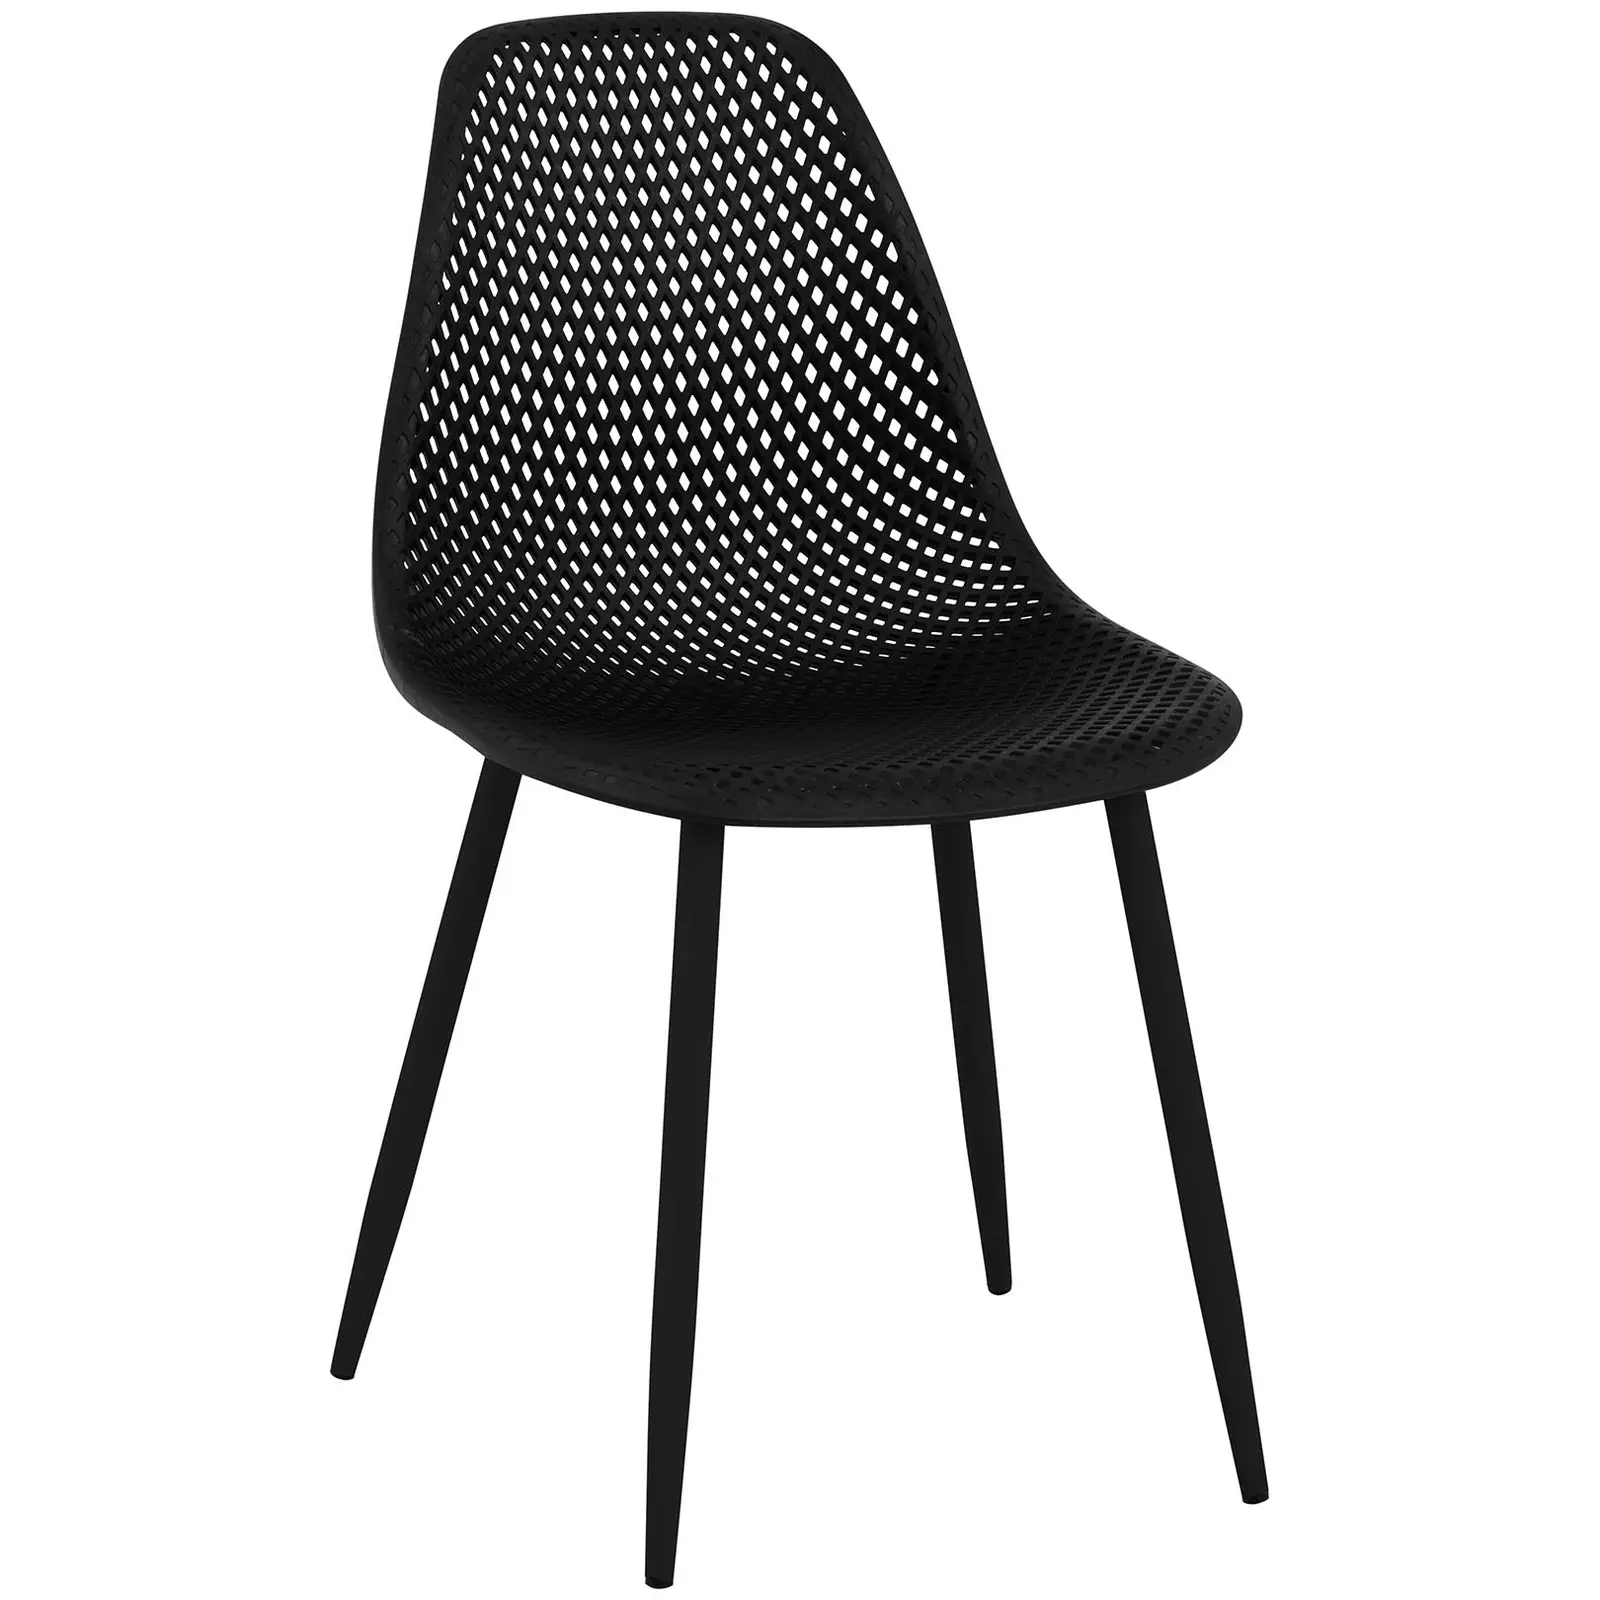 Chaise - Lot de 4 - 150 kg max. - Surface d'assise de 52 x 46,5 cm - Coloris noir - 2